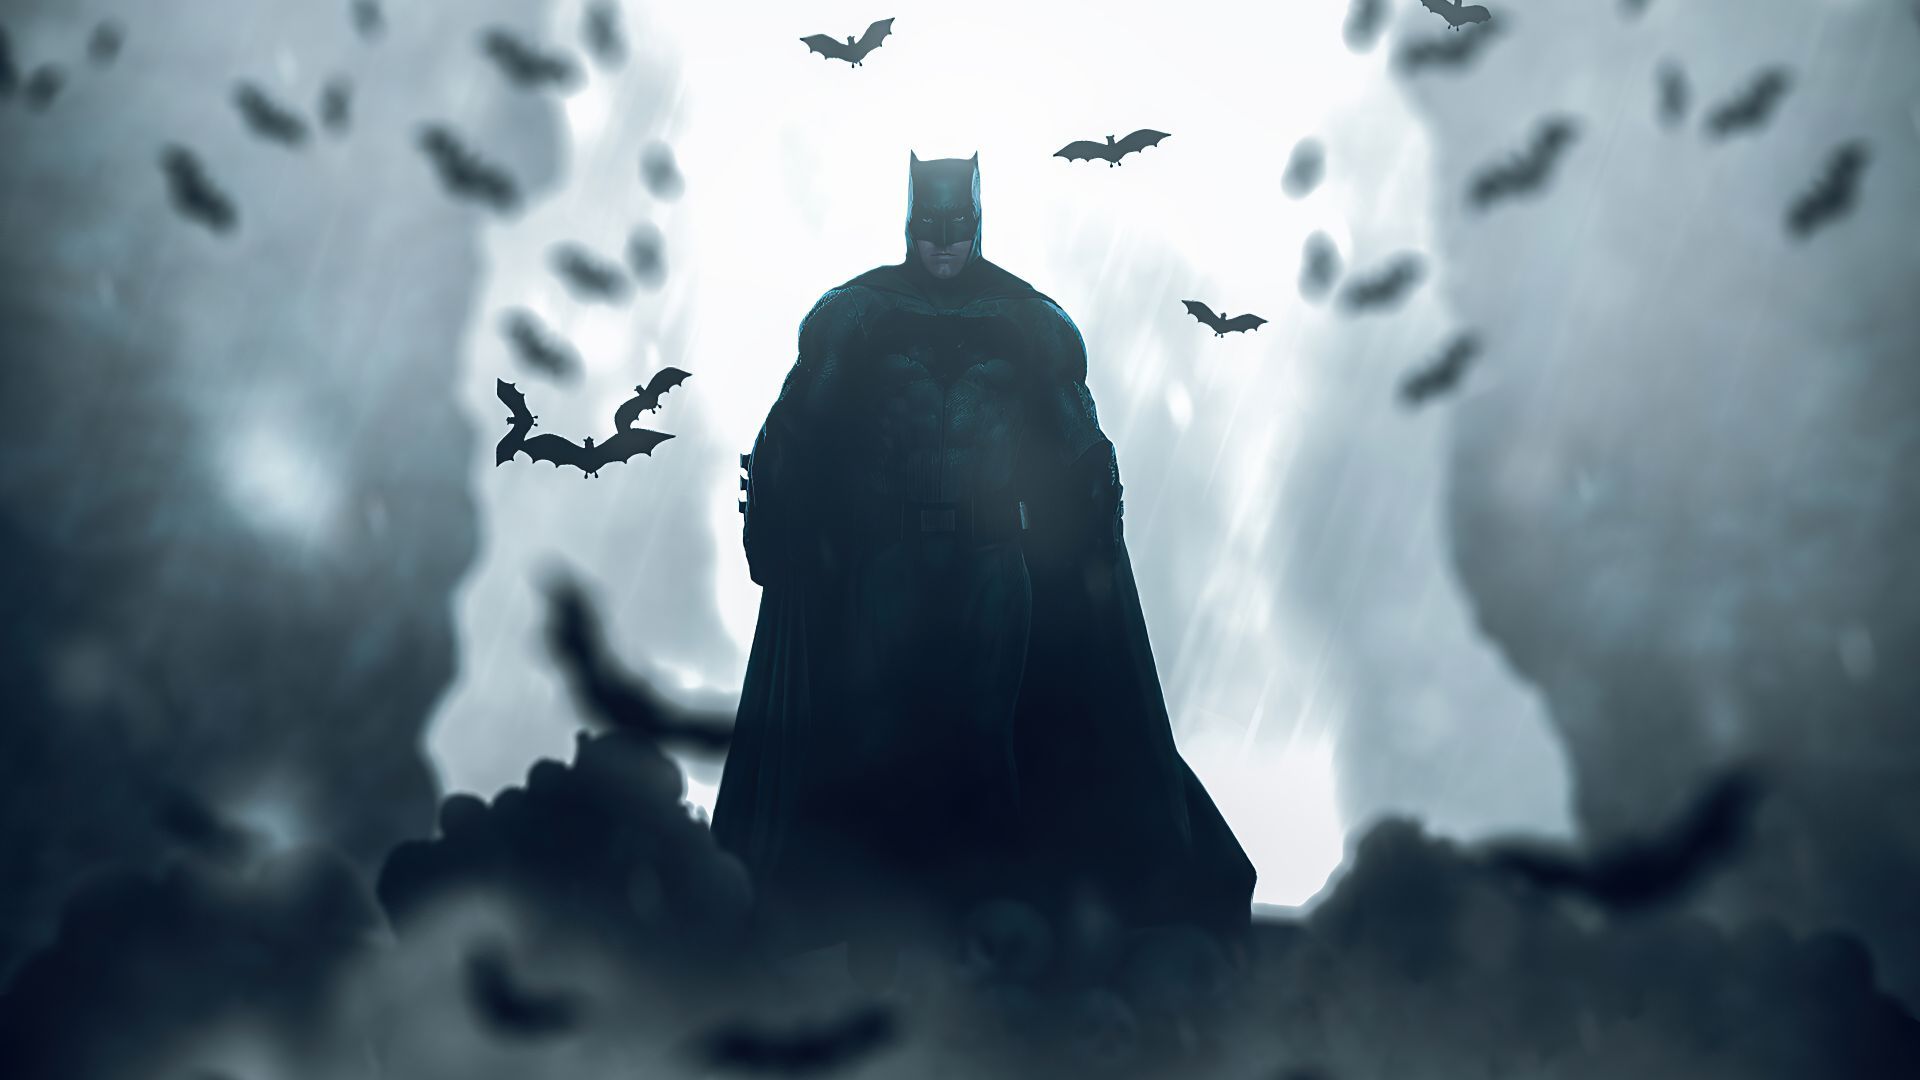 Desktop Wallpaper Batman, Bat Cave, Bats, Silhouette, HD Image, Picture, Background, 952be4